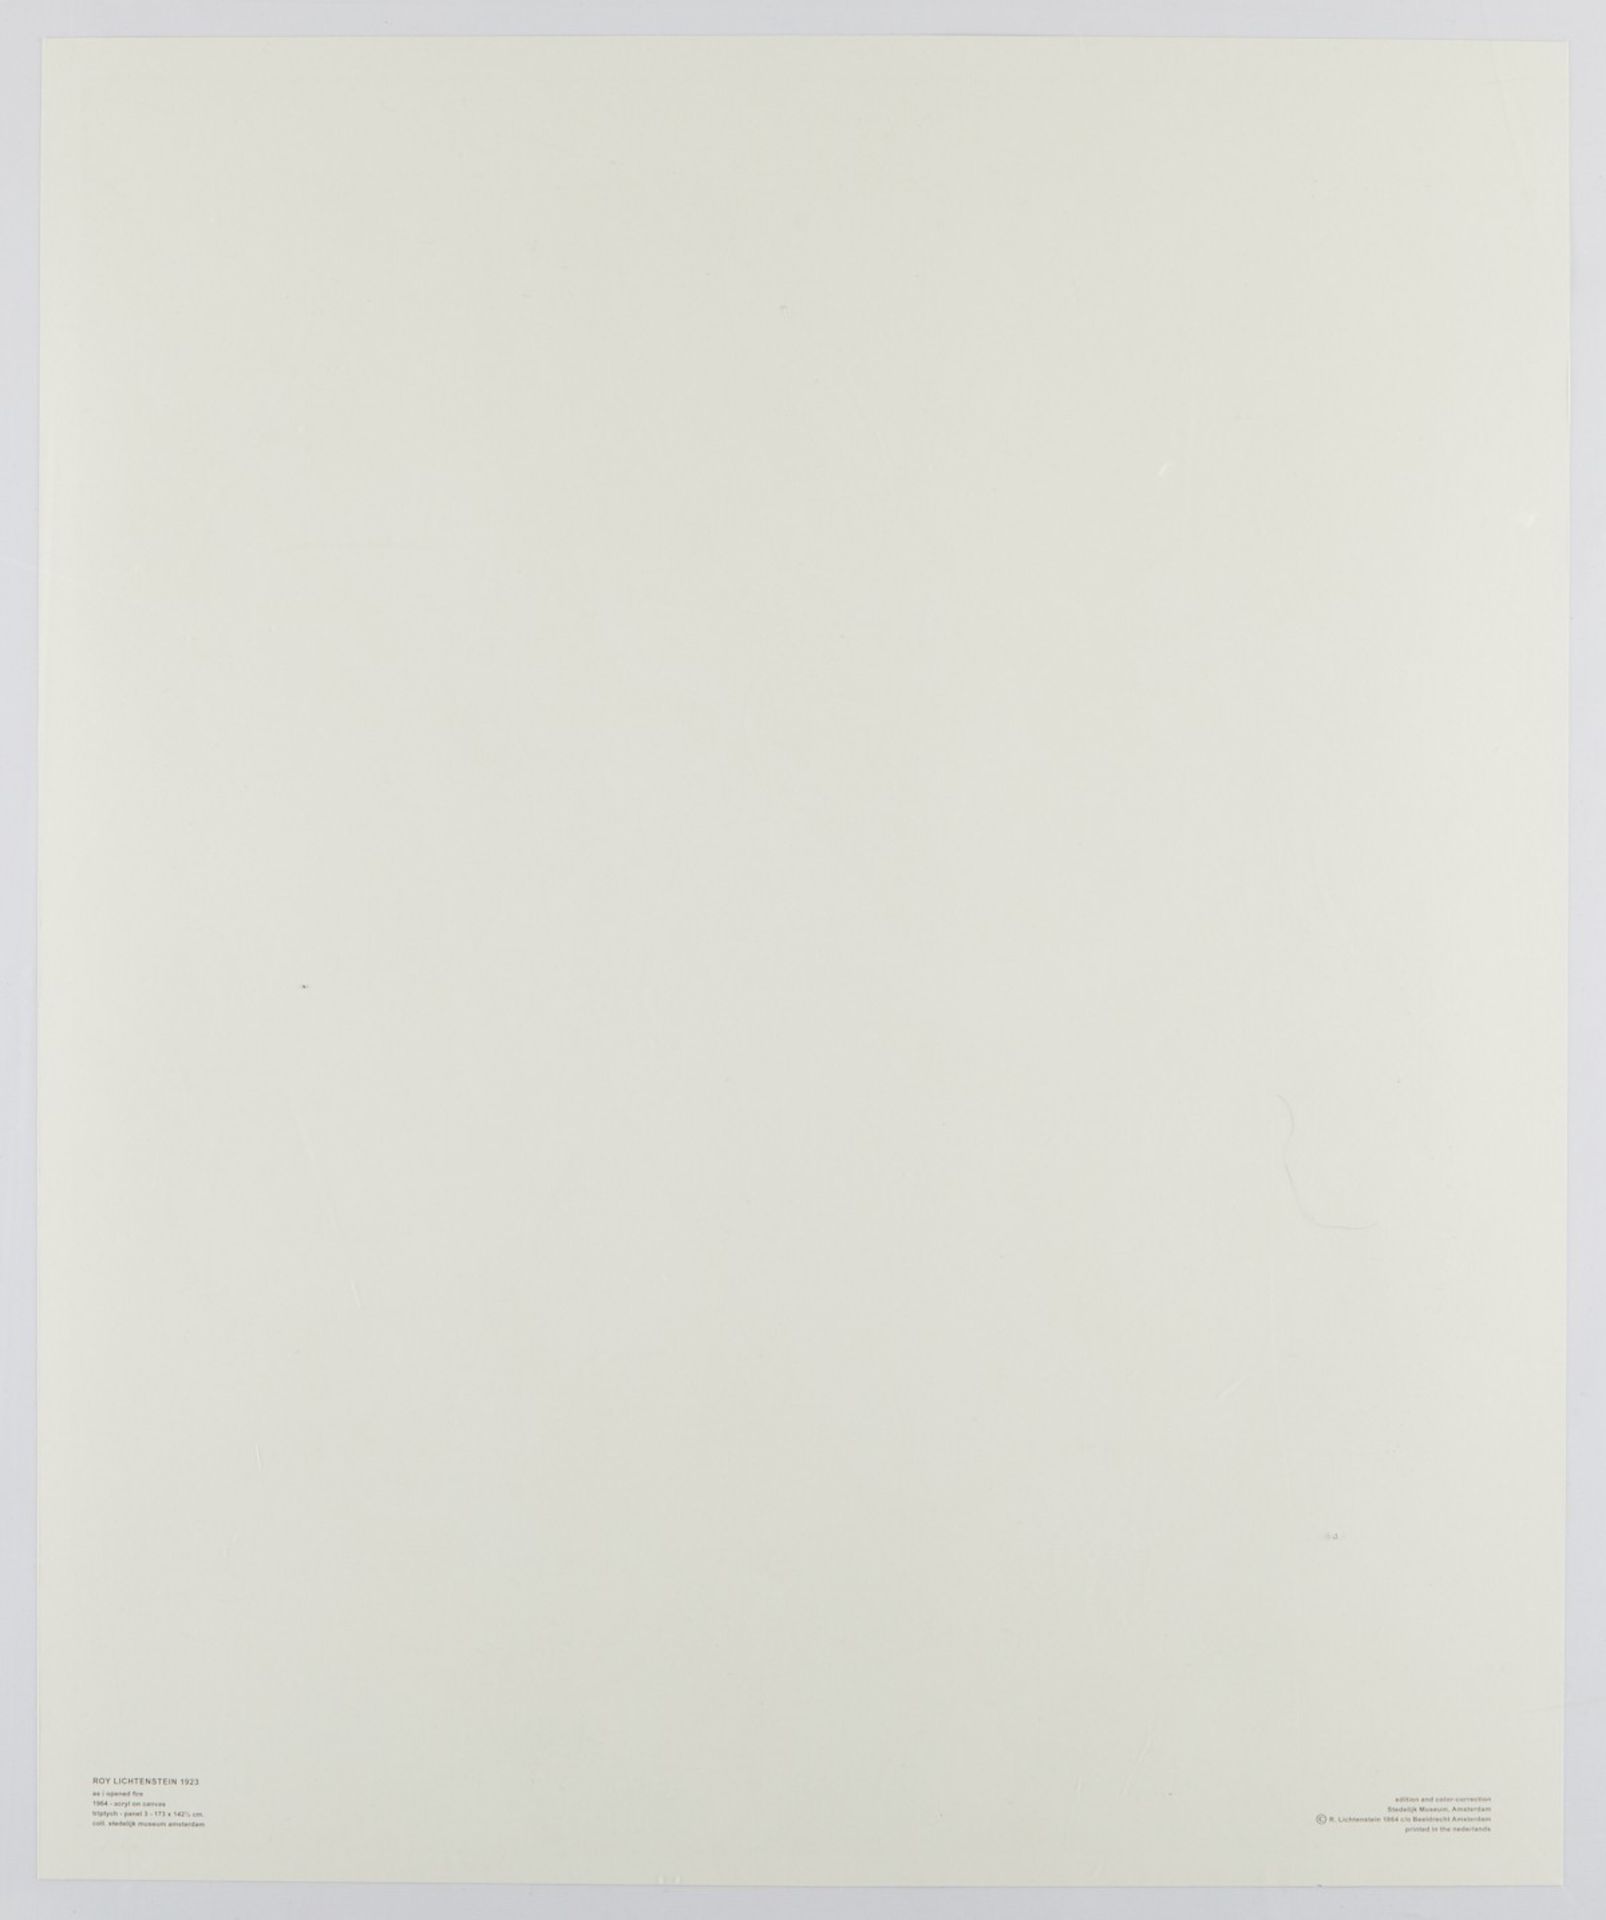 Roy Lichtenstein "As I Opened Fire" Poster Triptych - Bild 13 aus 15